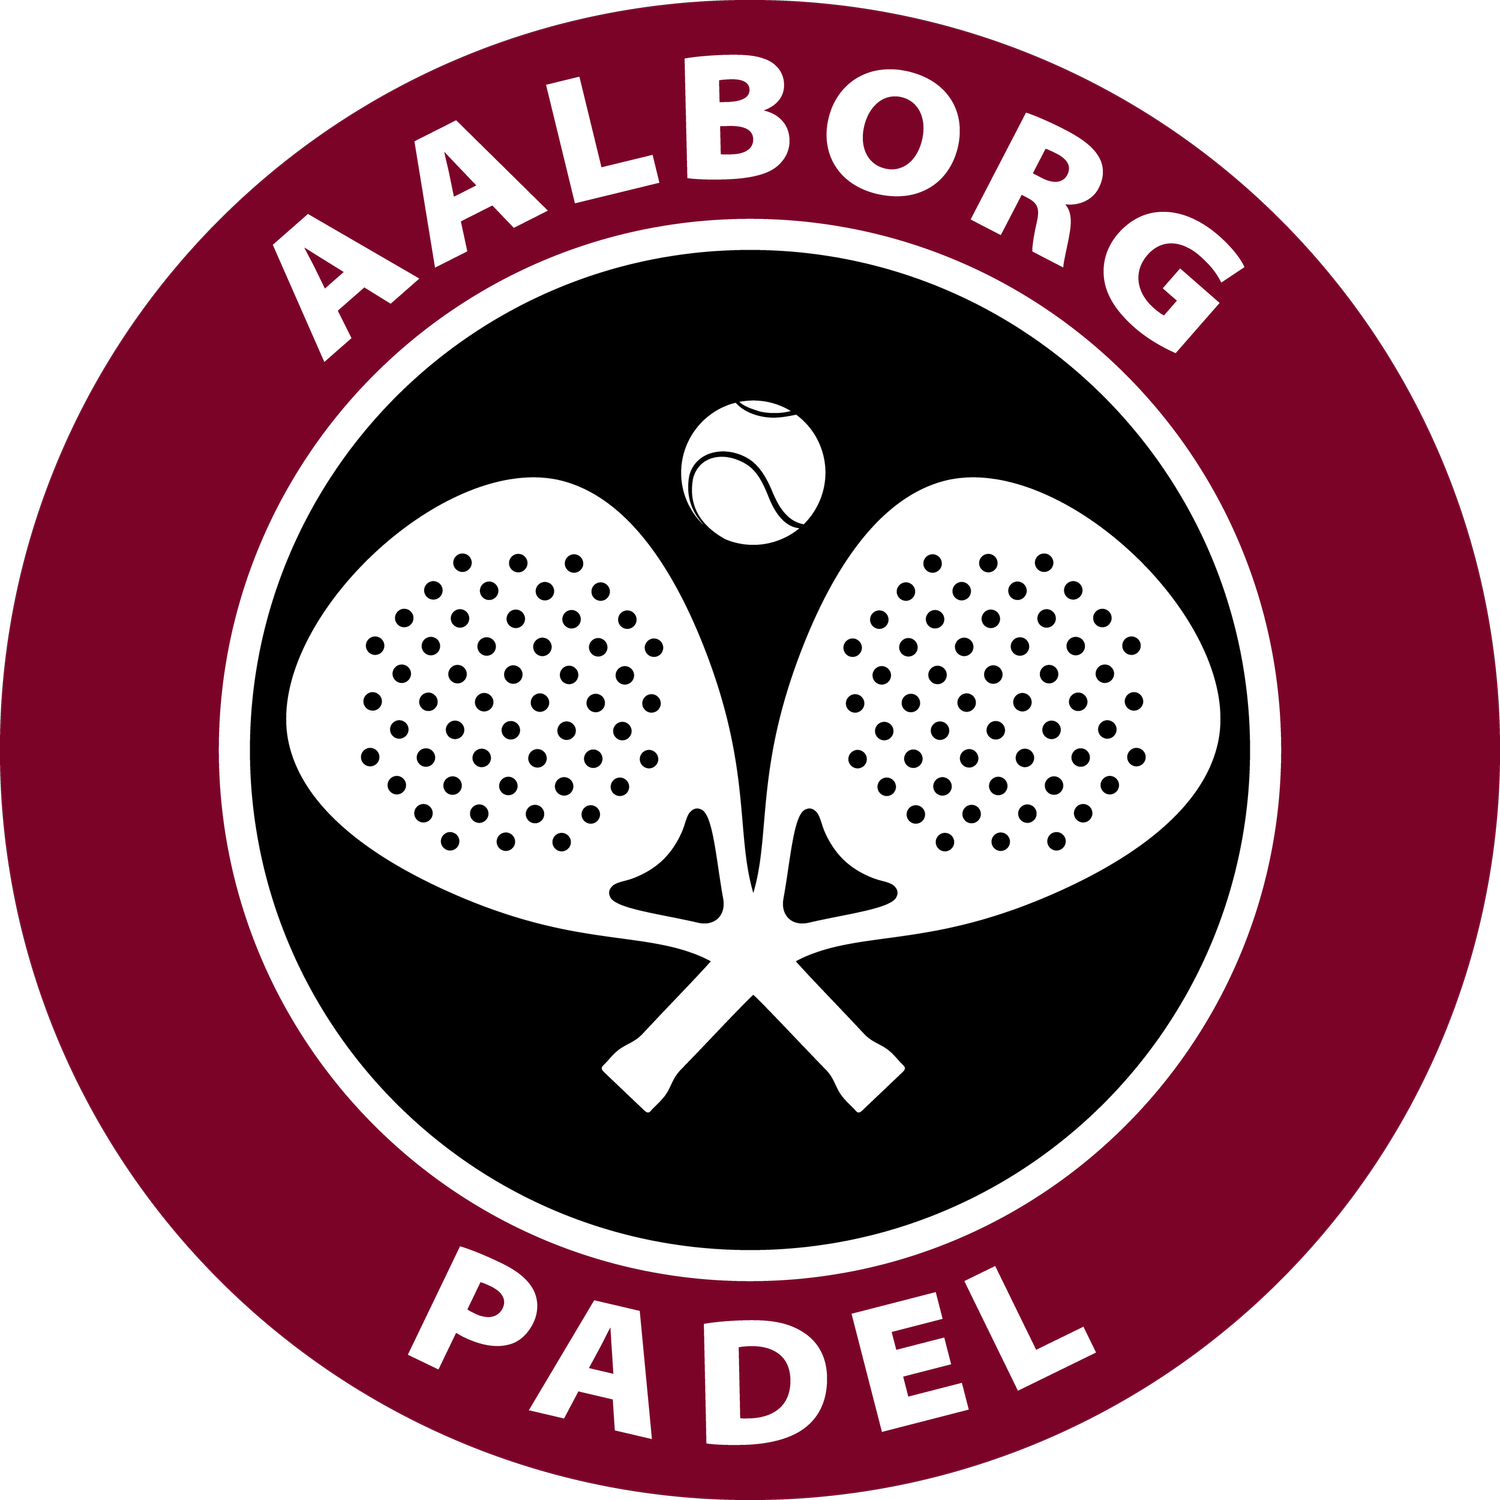 Aalborg Padel 